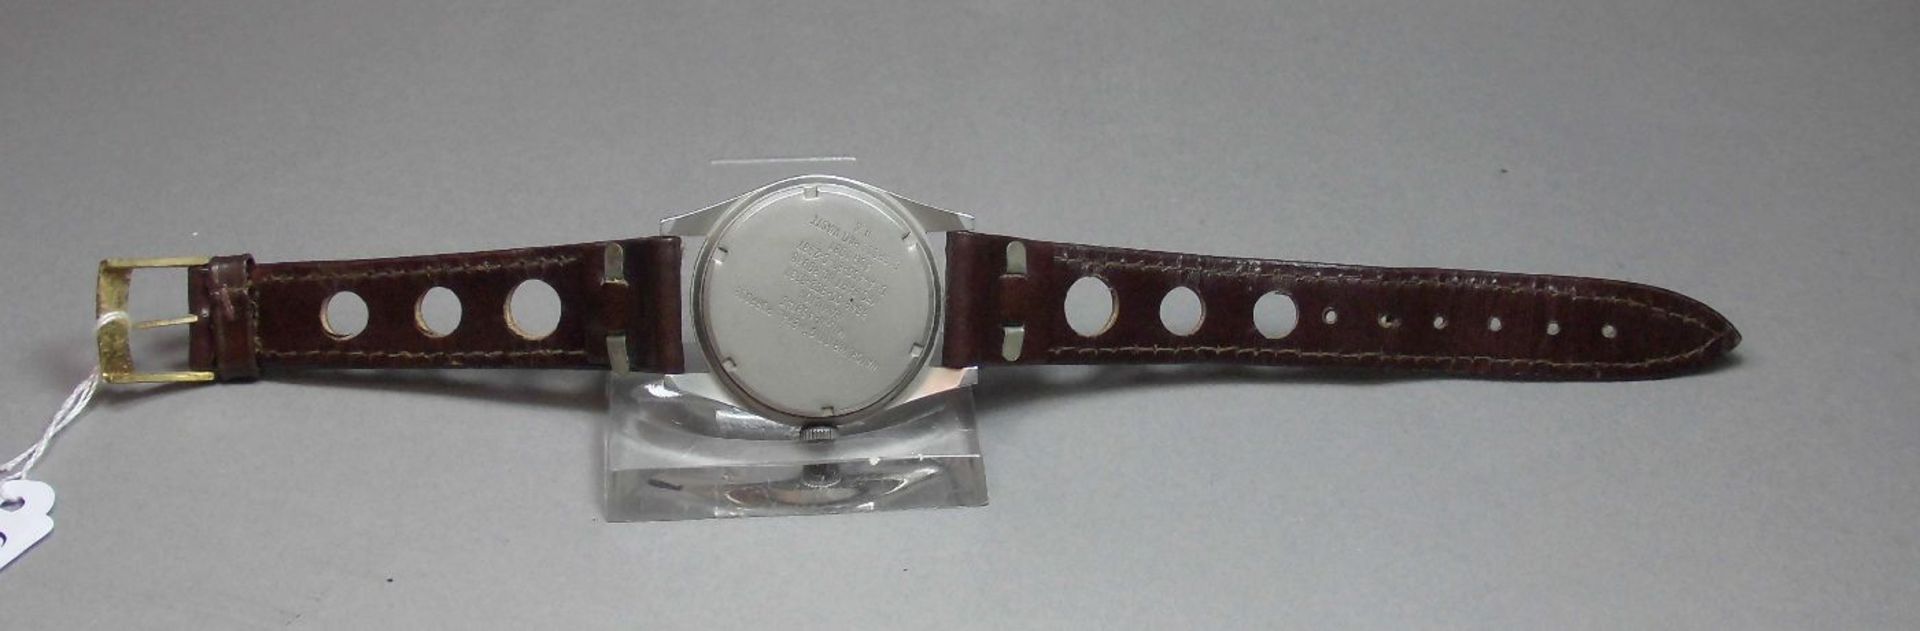 US MILITÄRUHR / ARMBANDUHR / US military wristwatch, Handaufzug, 1981. Rundes Stahlgehäuse mit 24- - Image 3 of 4